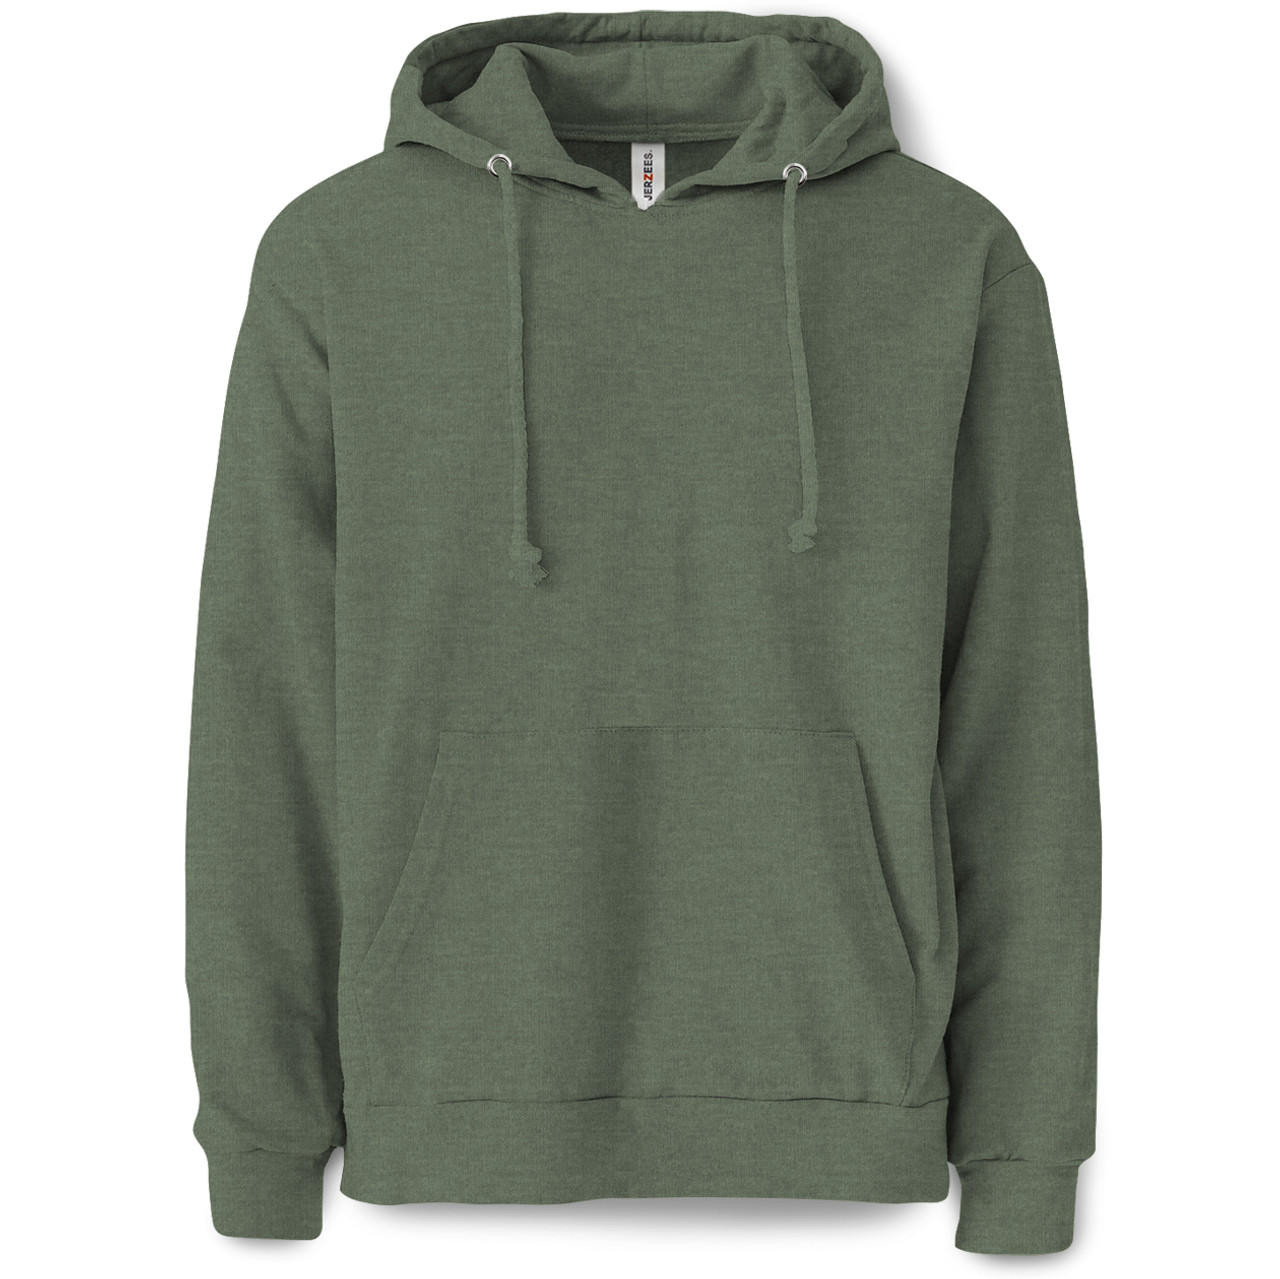 Plain Pullover Hooded Sweatshirt (Military Green) - B-WEAR SPORTSWEAR